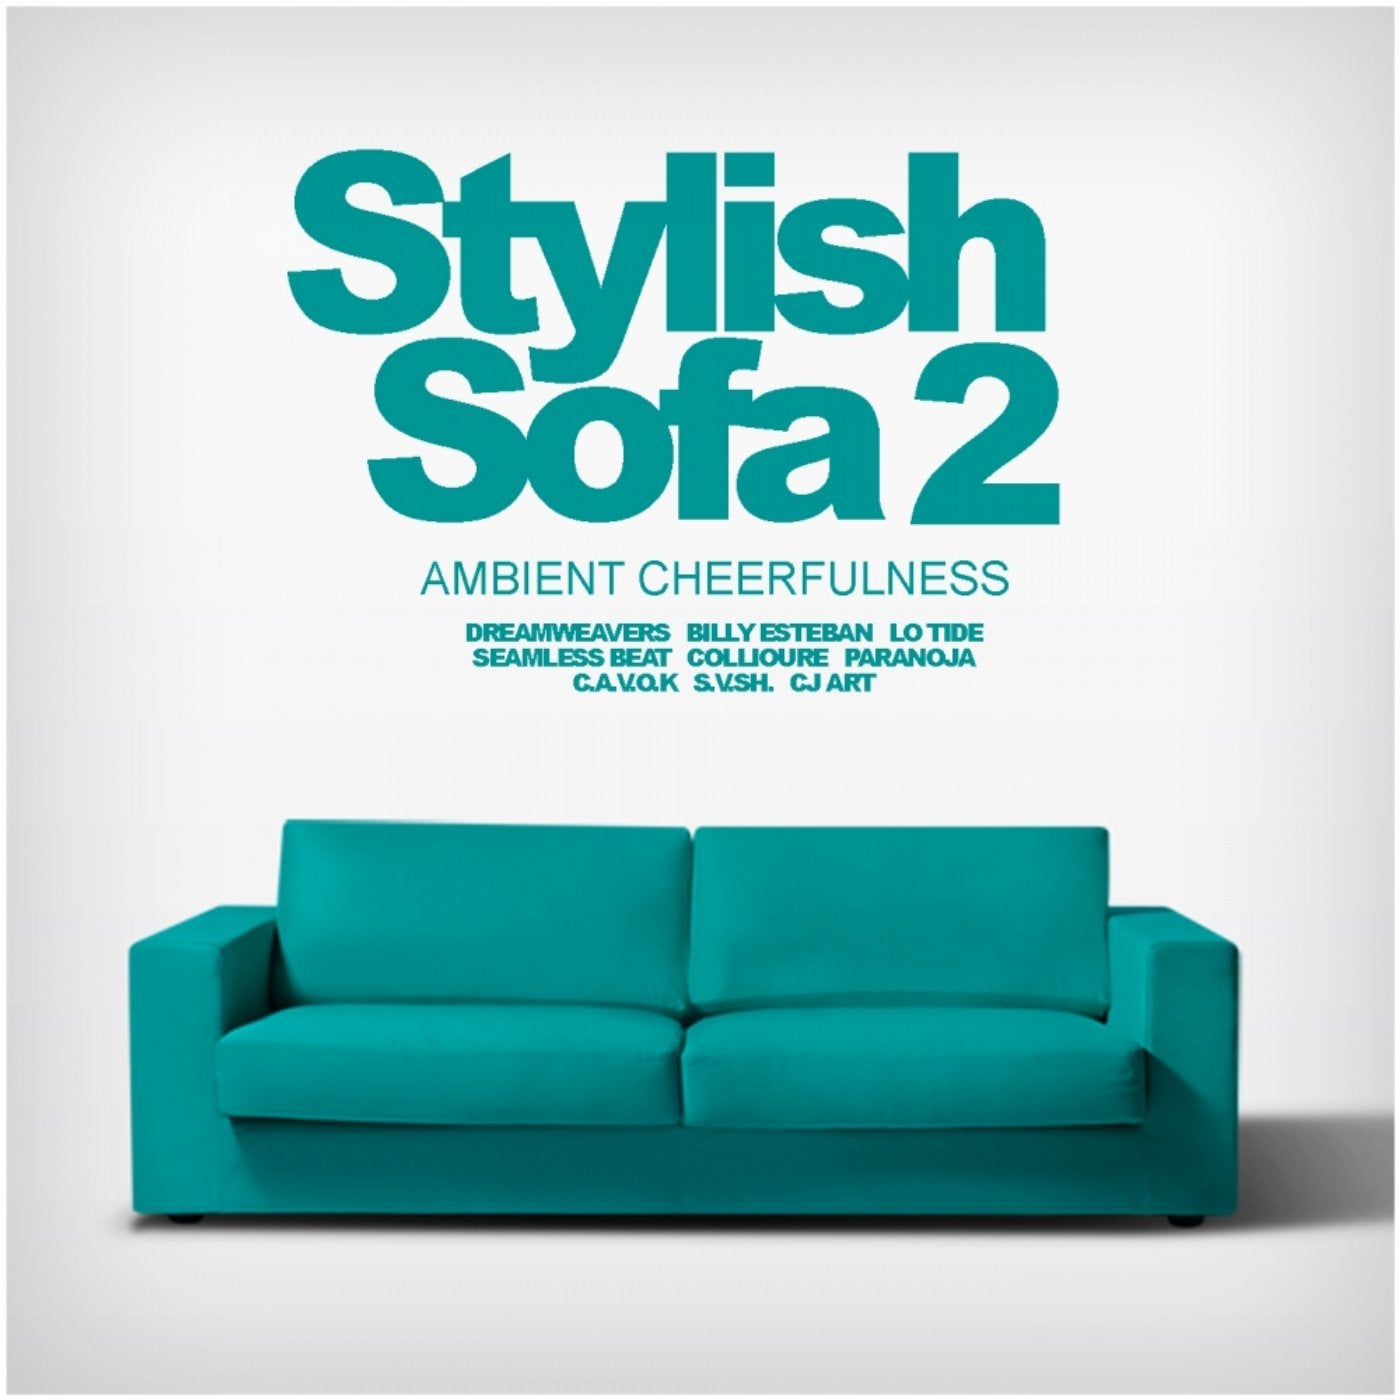 Stylish Sofa, Vol. 2: Ambient Cheerfulness